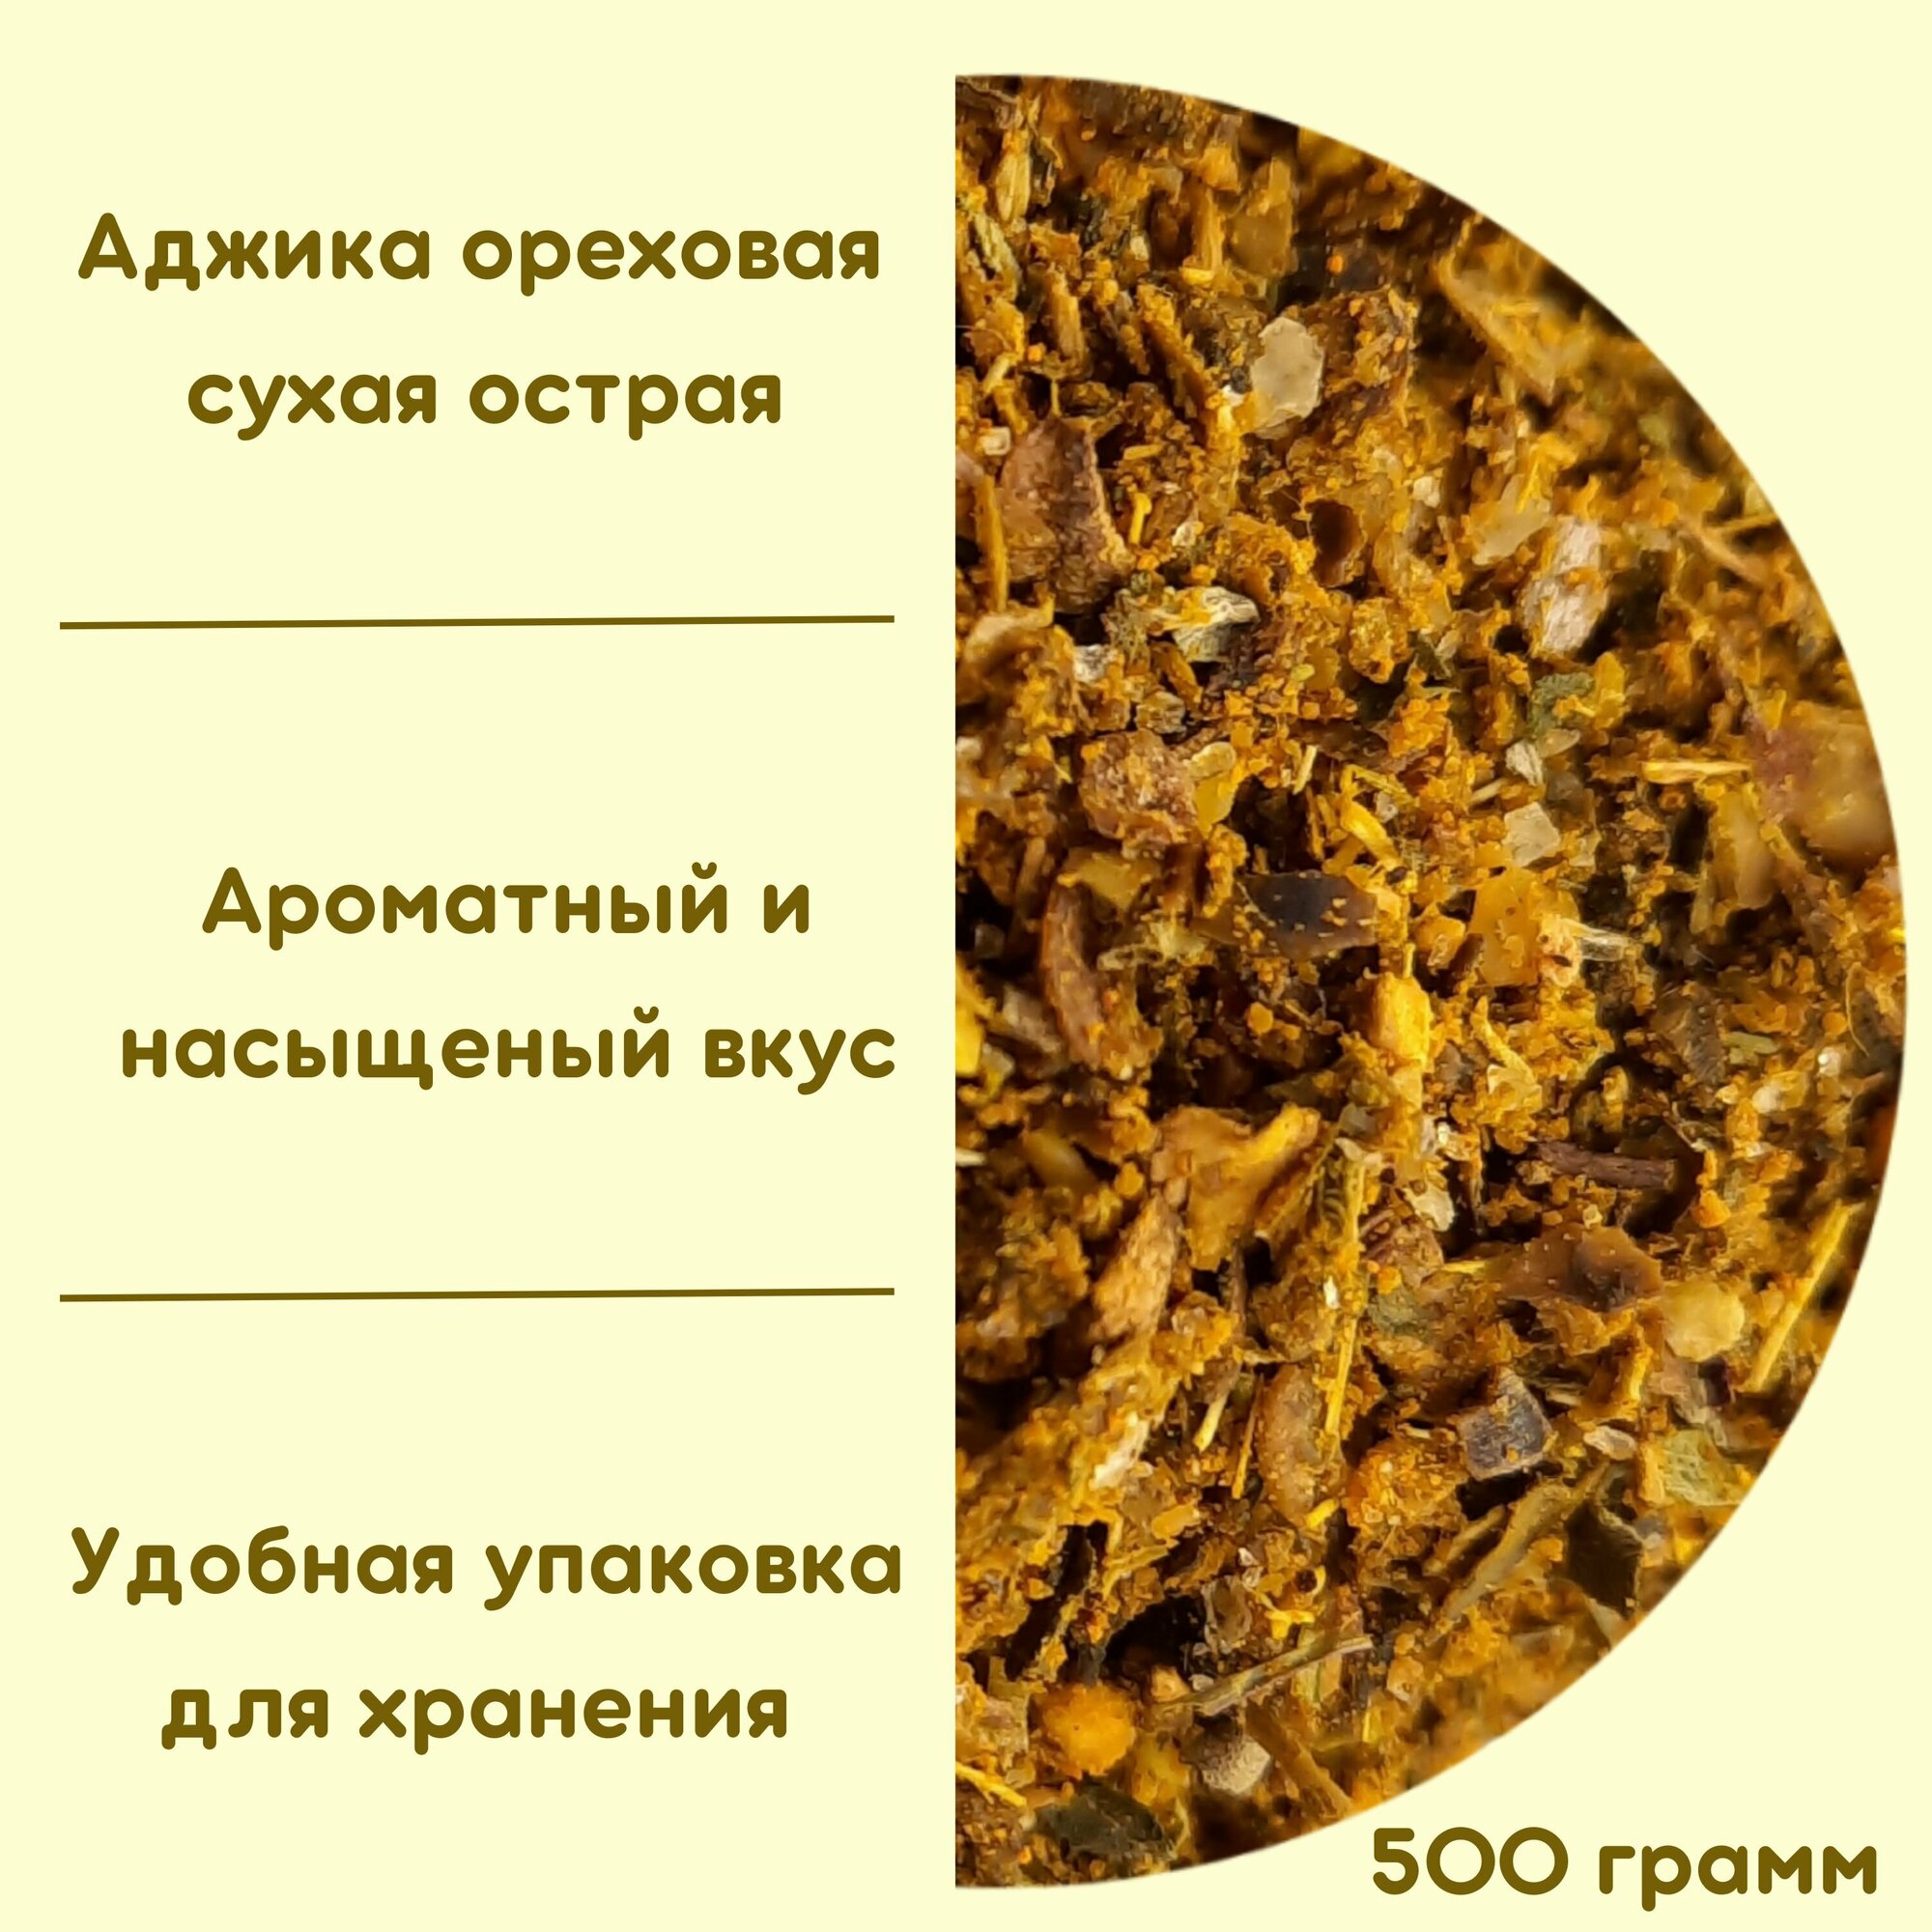 Аджика ореховая острая сухая (500г)